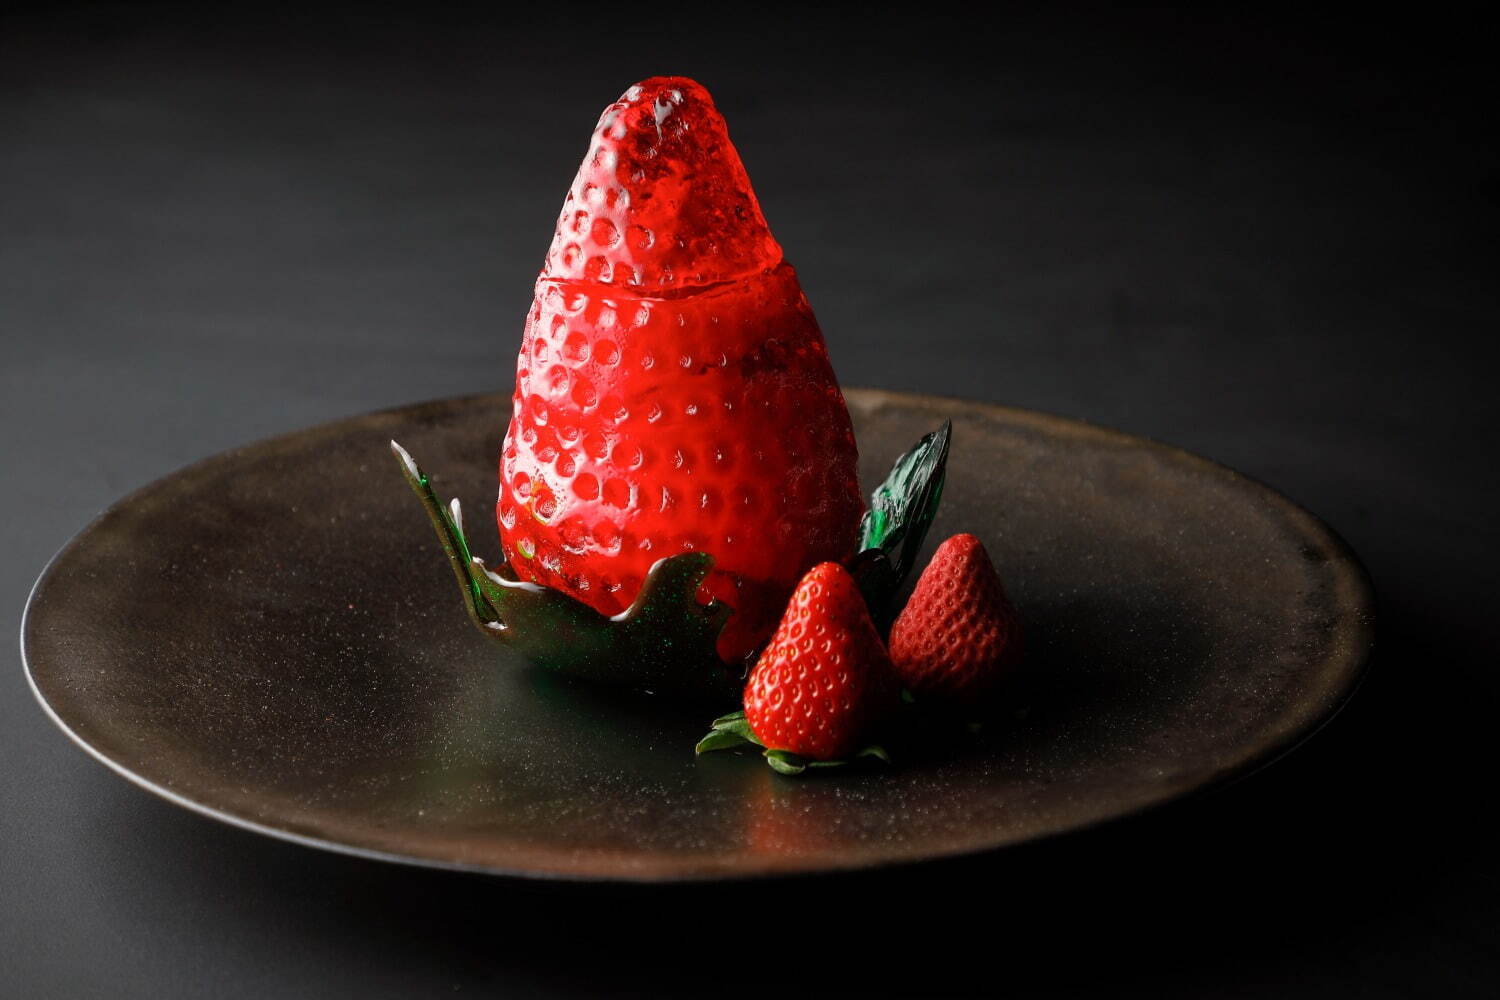 「苺 Art of Strawberry」 7,000円
※サービス料込み。
※ウエルカムドリンク、苺のミニパンケーキ付き